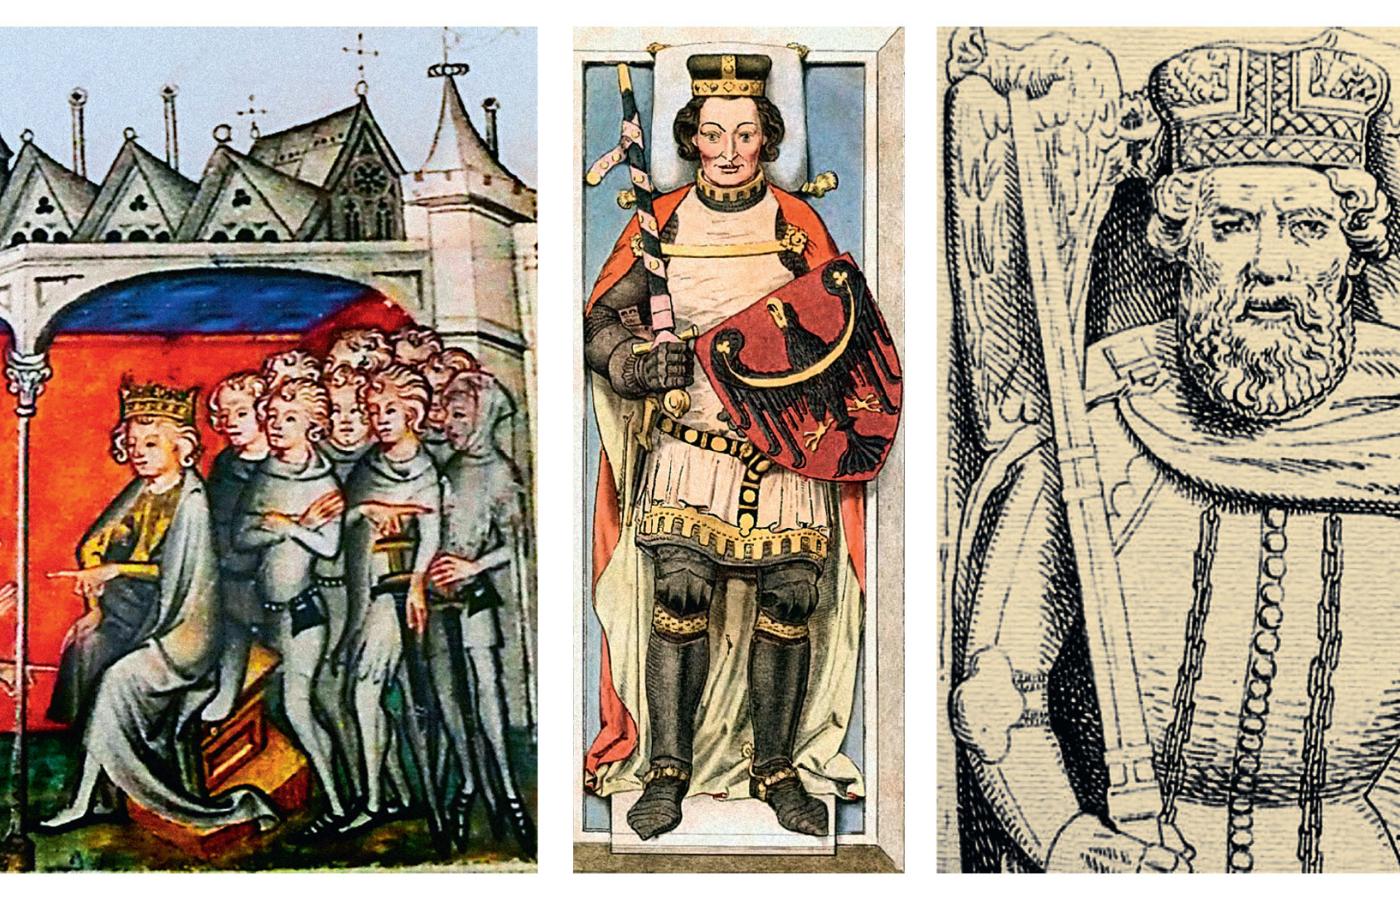 Od lewej: Jan Luksemburski jako sędzia; ilustracja z XIV w., Henryk VI Dobry, książę wrocławski, i Bolesław II Opolski, którzy hołd czeskiemu władcy złożyli w 1327 r.; ilustracje z XIX w.